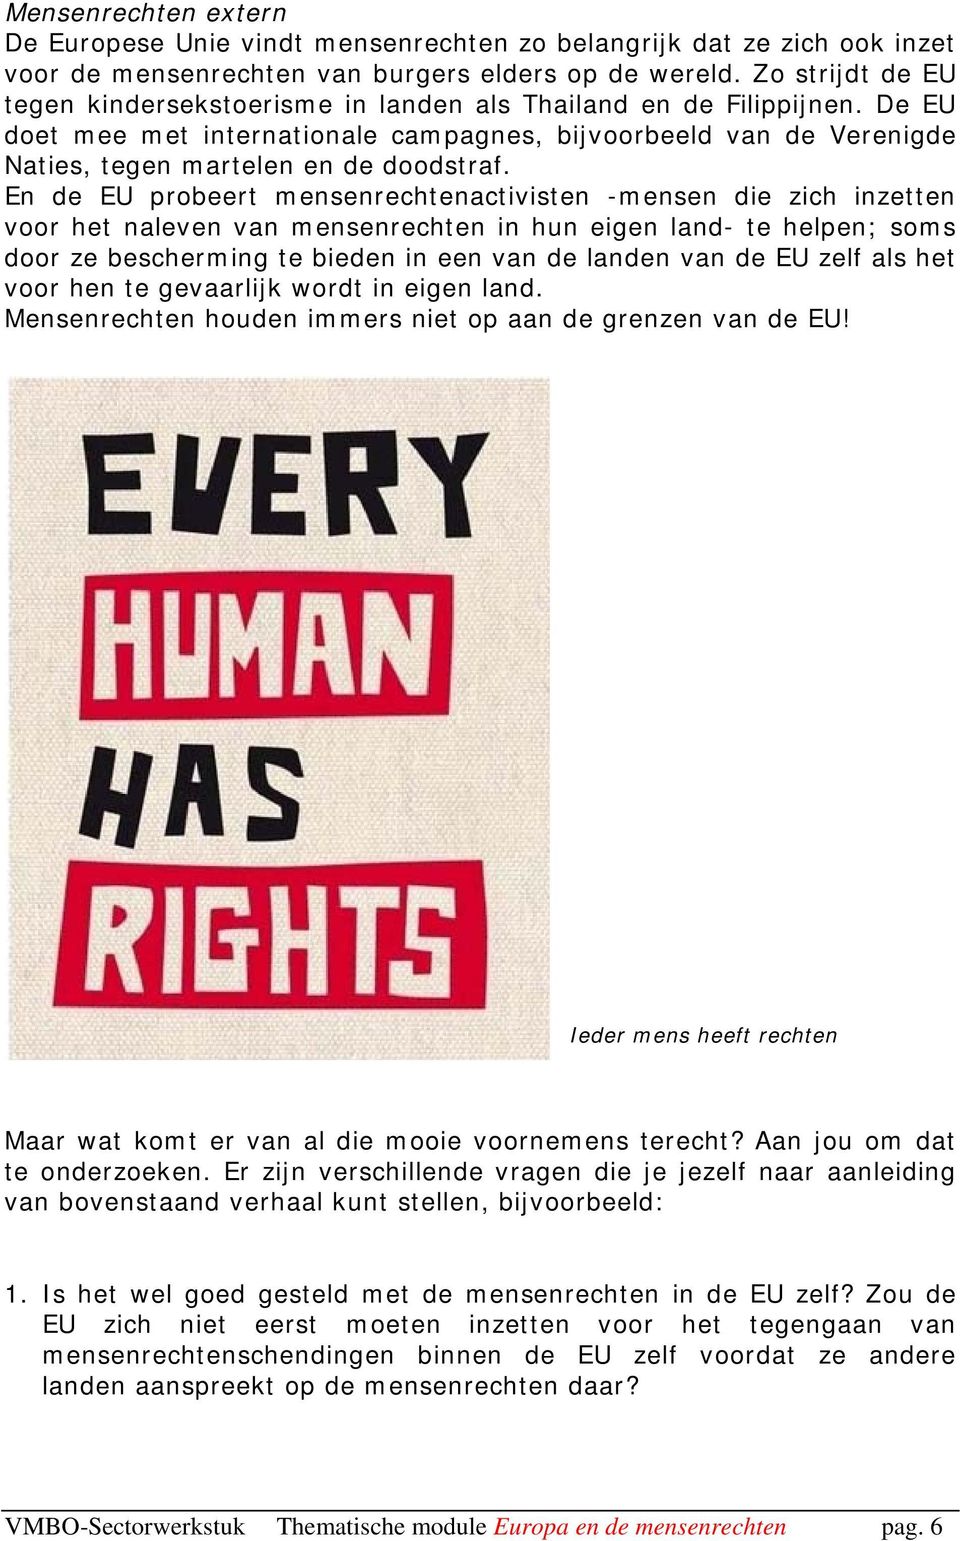 En de EU probeert mensenrechtenactivisten -mensen die zich inzetten voor het naleven van mensenrechten in hun eigen land- te helpen; soms door ze bescherming te bieden in een van de landen van de EU